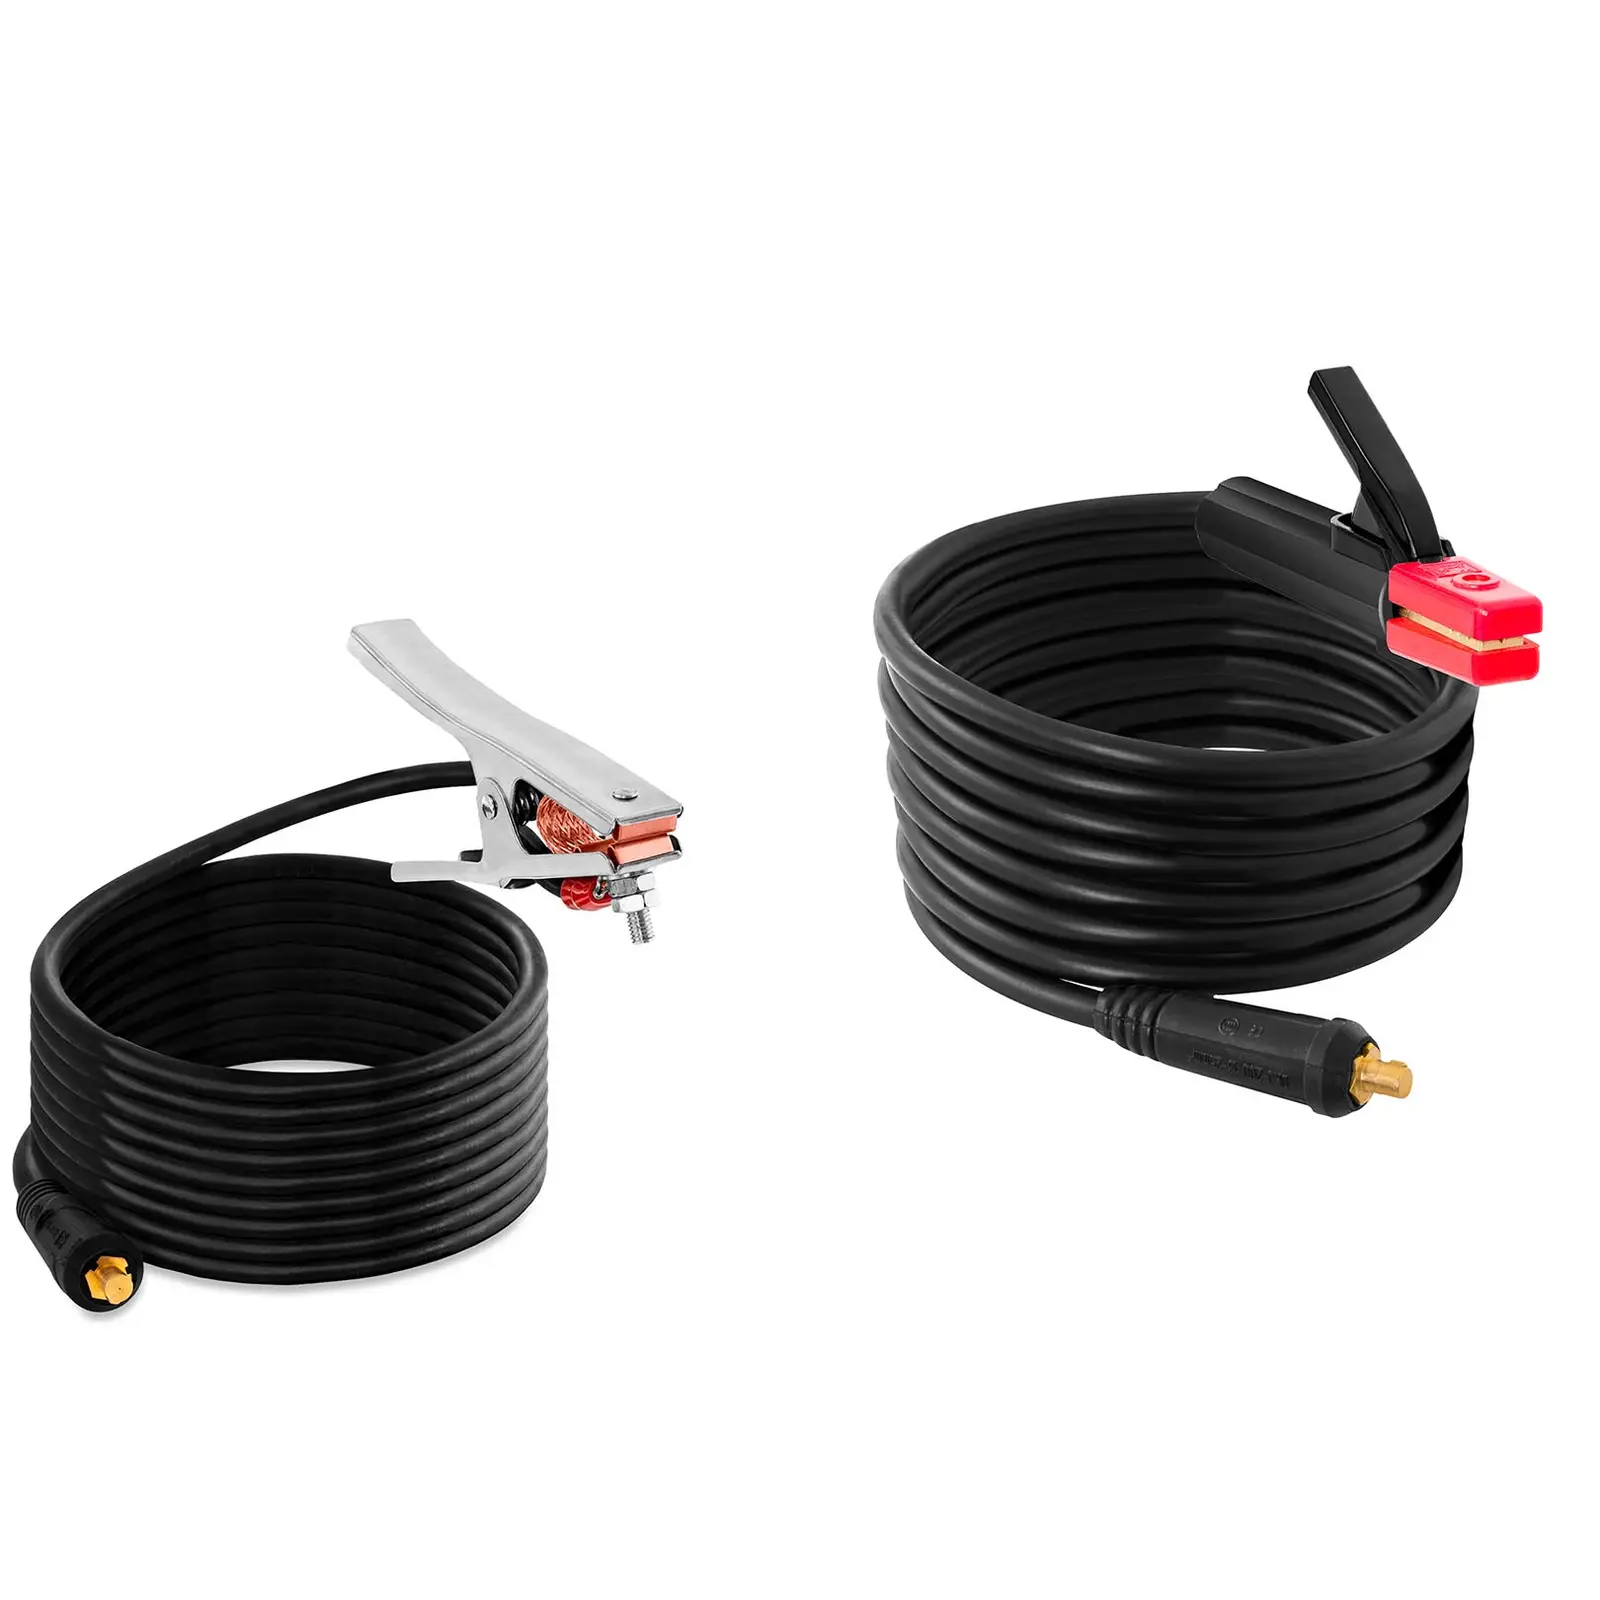 Elektroden Schweißgerät - IGBT - 220 A - Duty Cycle 60 % - 8 m Kabel